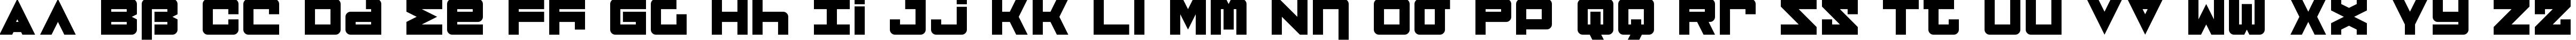 Пример написания английского алфавита шрифтом Novus Graecorum Regular